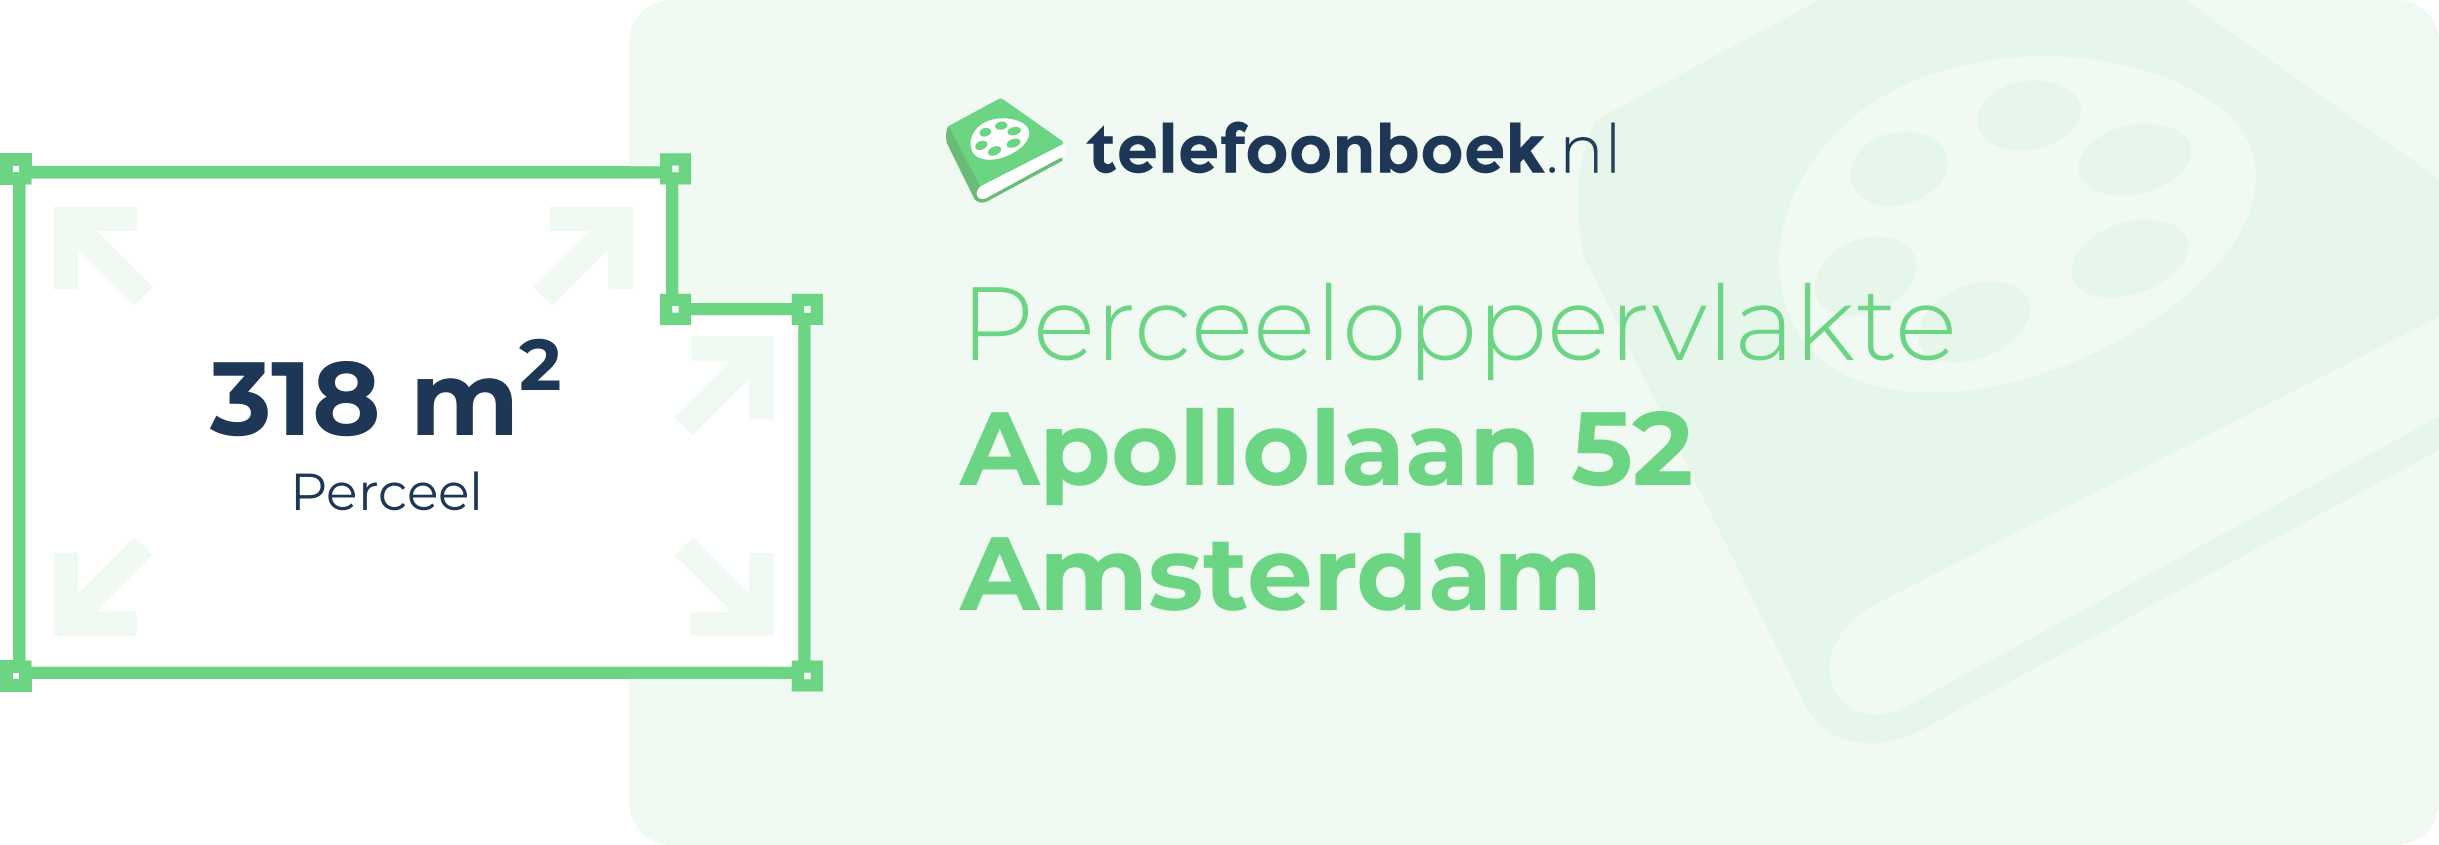 Perceeloppervlakte Apollolaan 52 Amsterdam